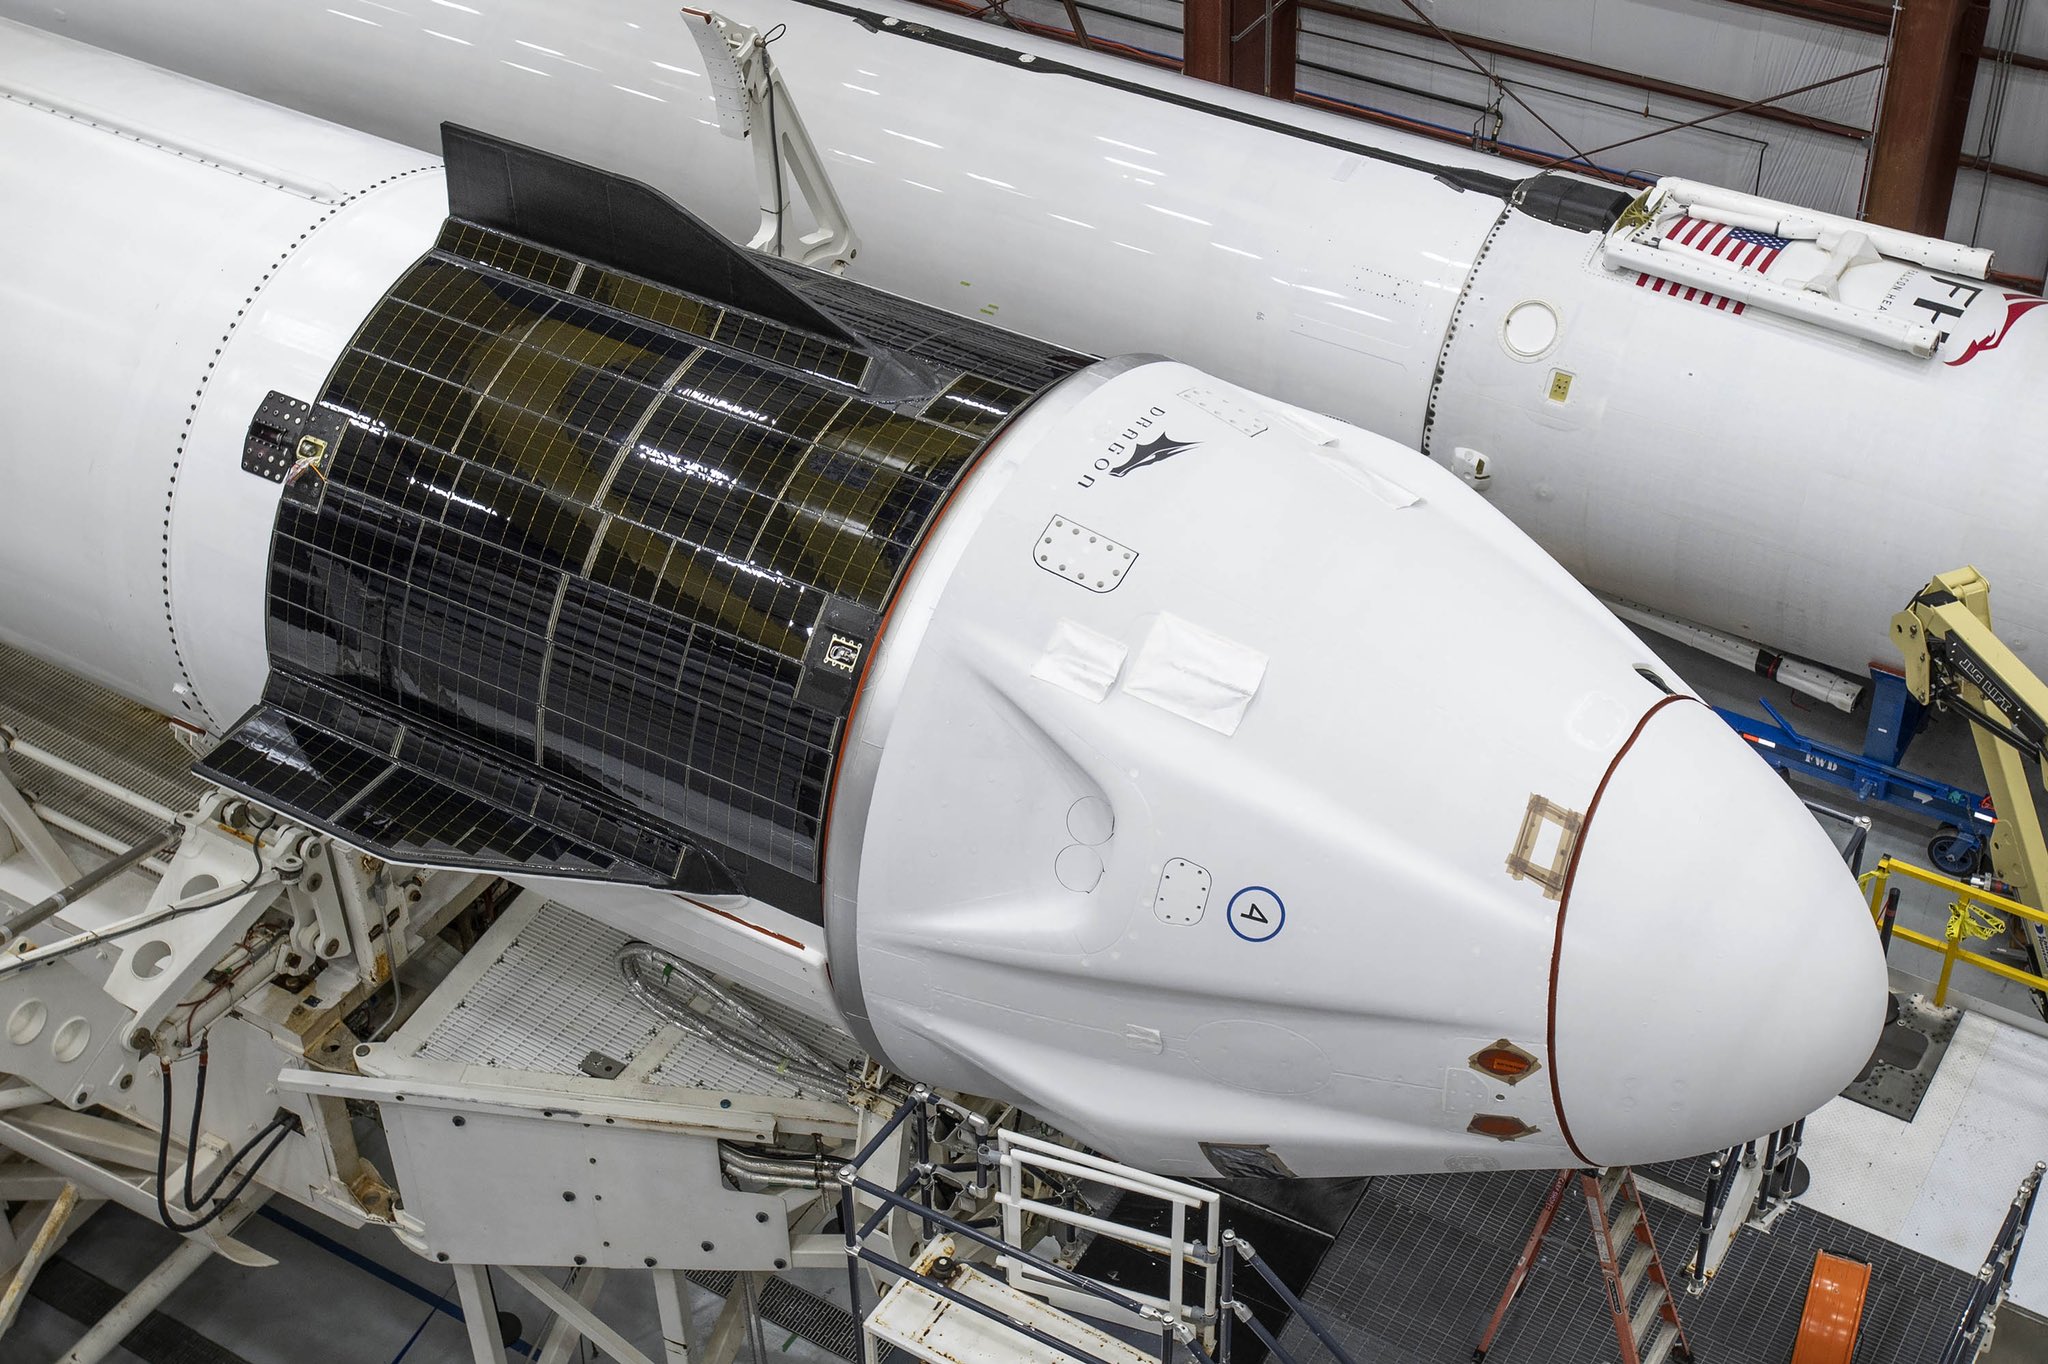 Rakieta Falcon 9 i załogowa kapsuła Dragon 2 w hangarze podczas przygotowań do startu (Źródło: SpaceX)